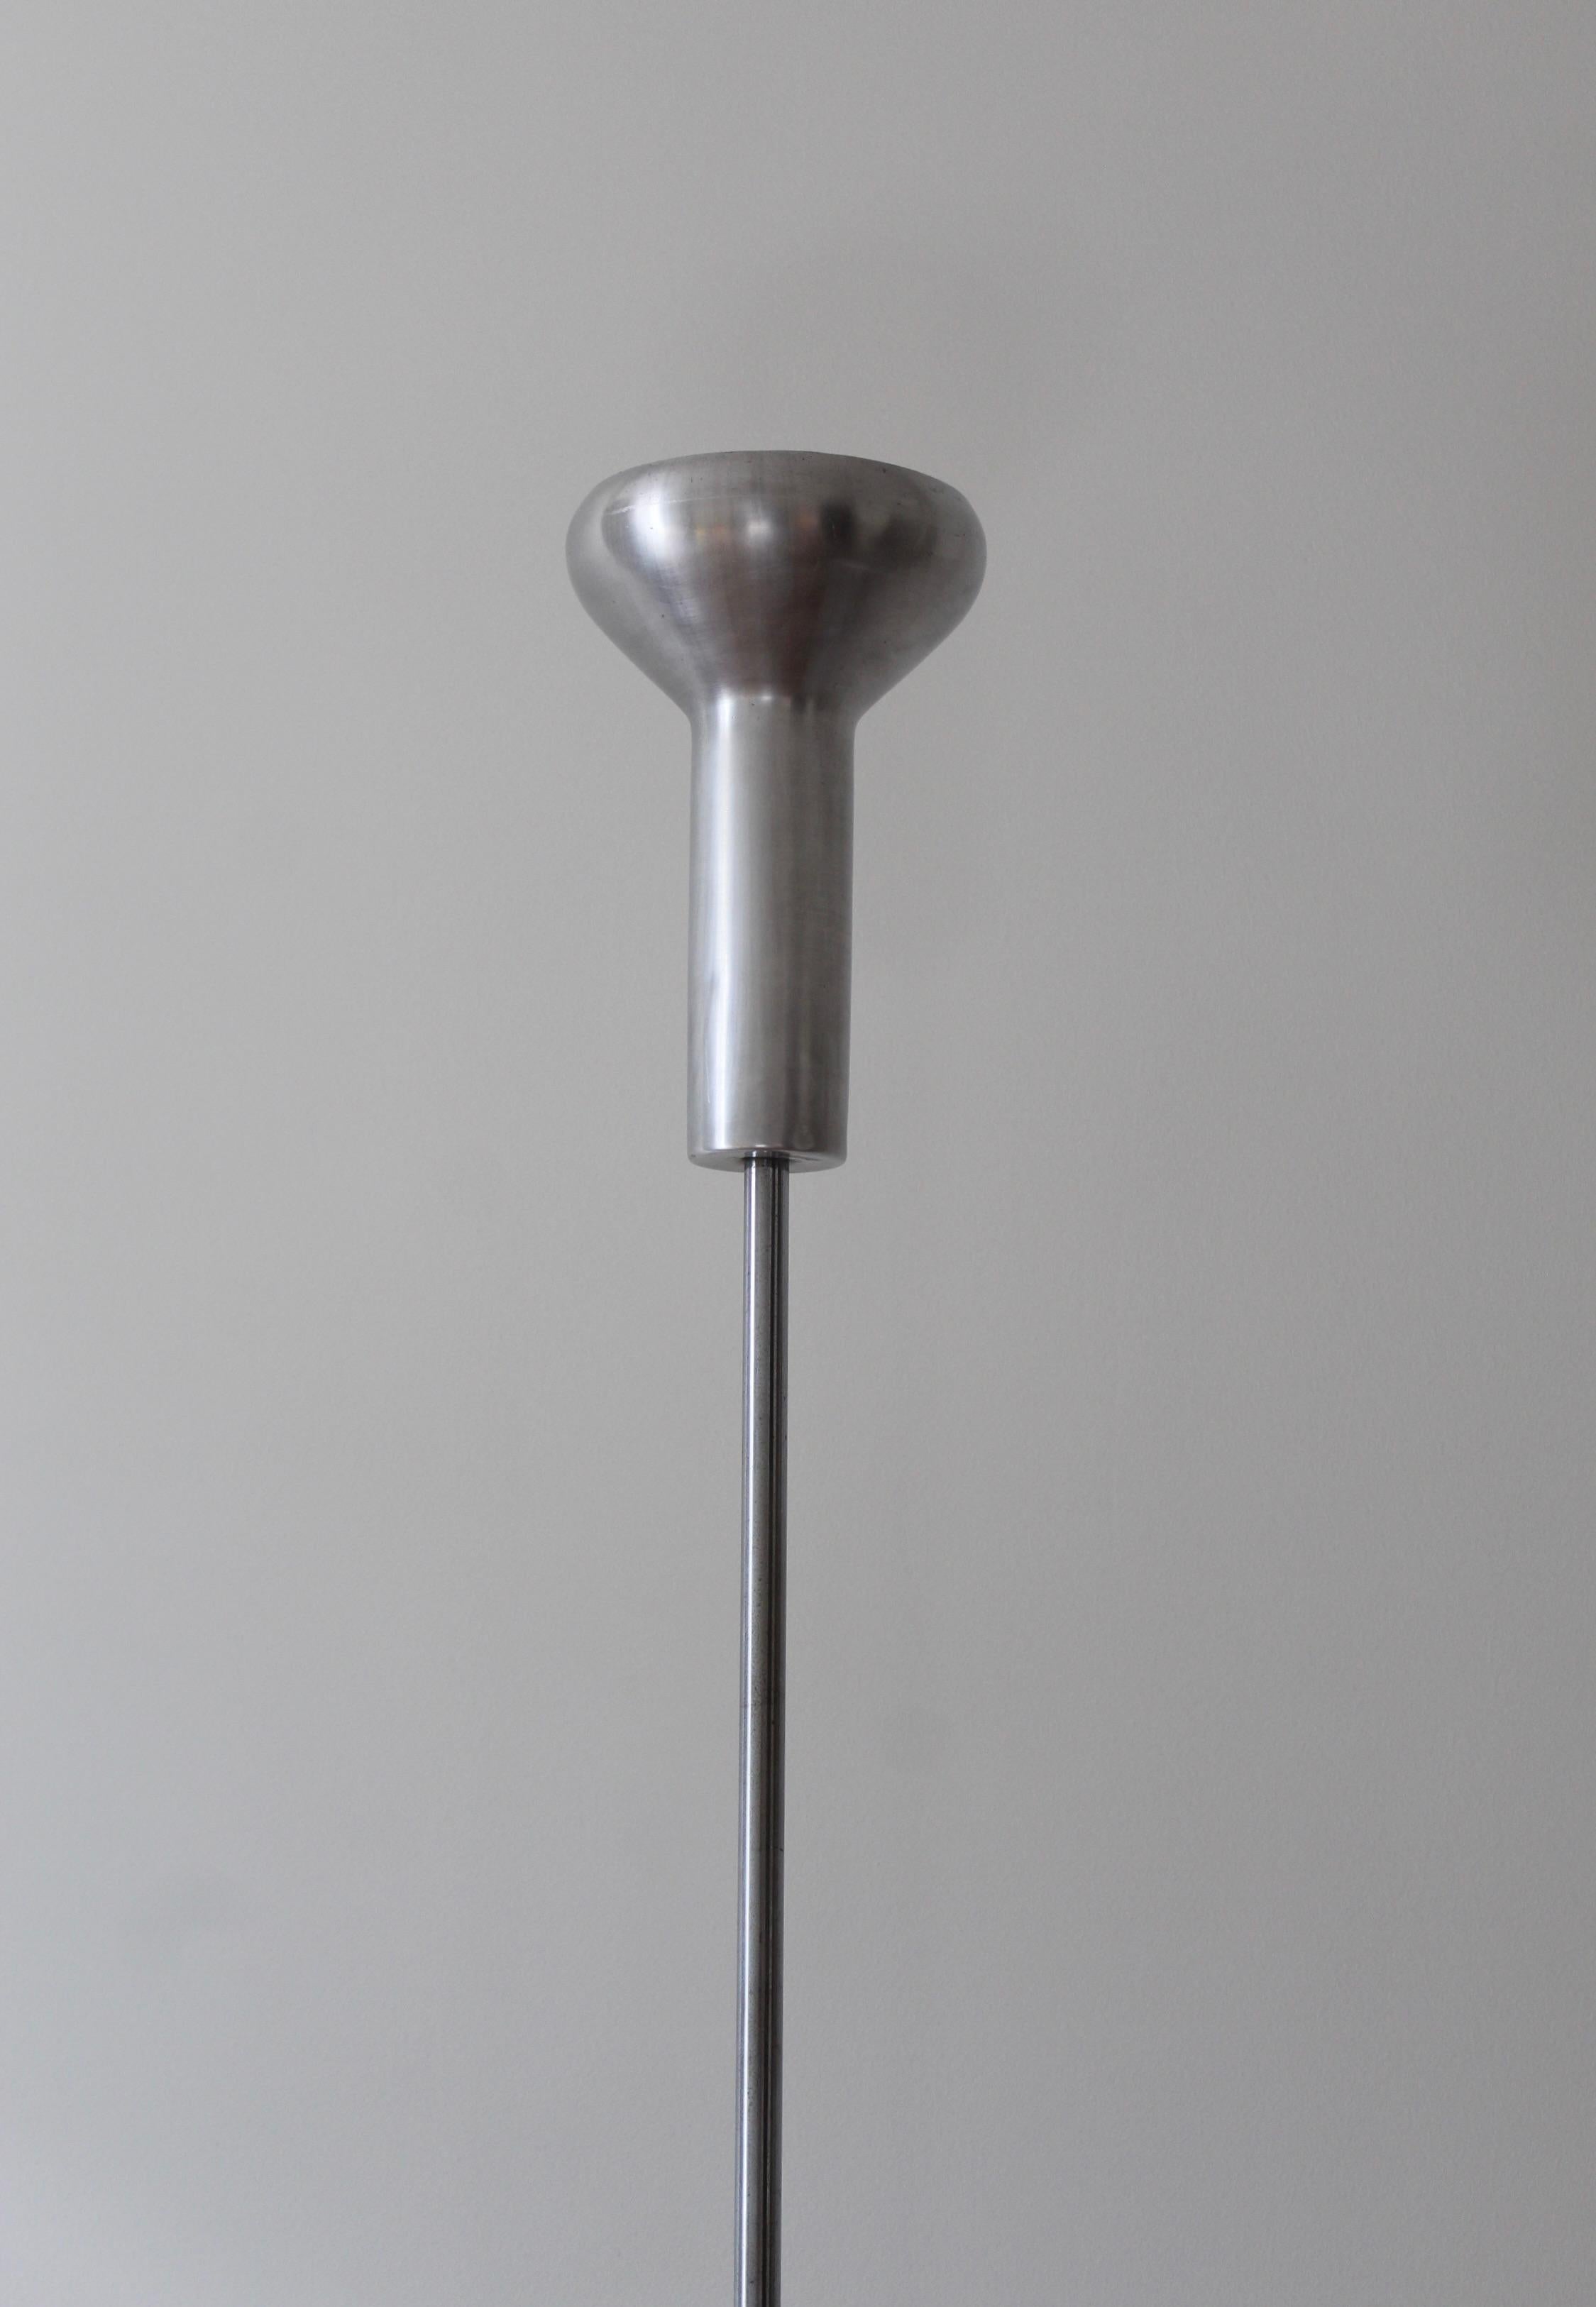 Mid-Century Modern Gino Sarfatti, Floor Lamp, Aluminum, Chrome Metal, Arteluce, Italy, 1950s For Sale